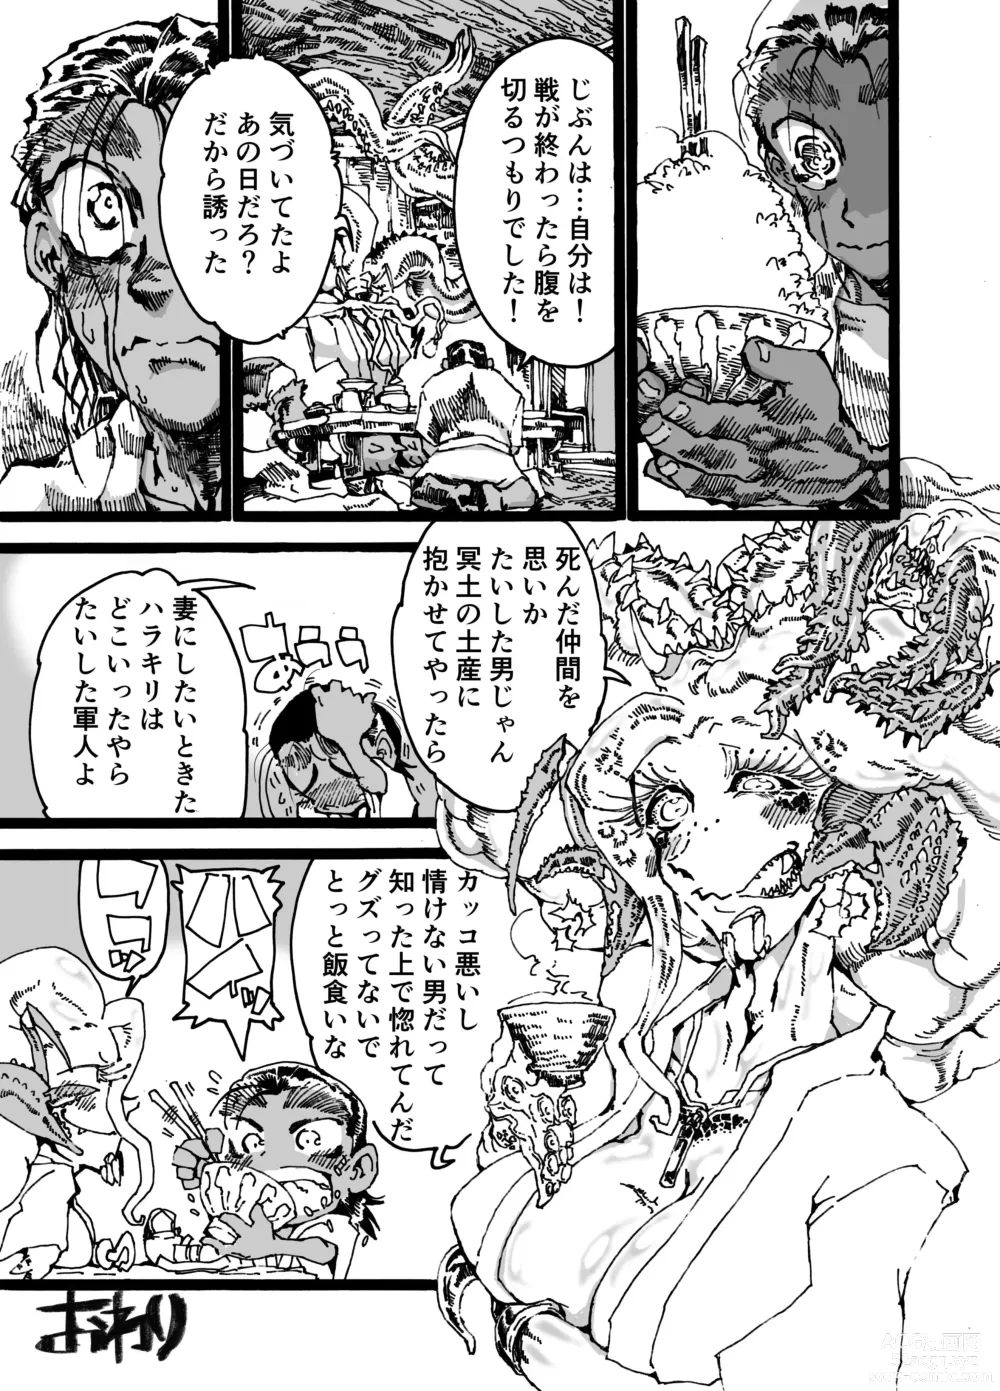 Page 49 of doujinshi Rivuai a san